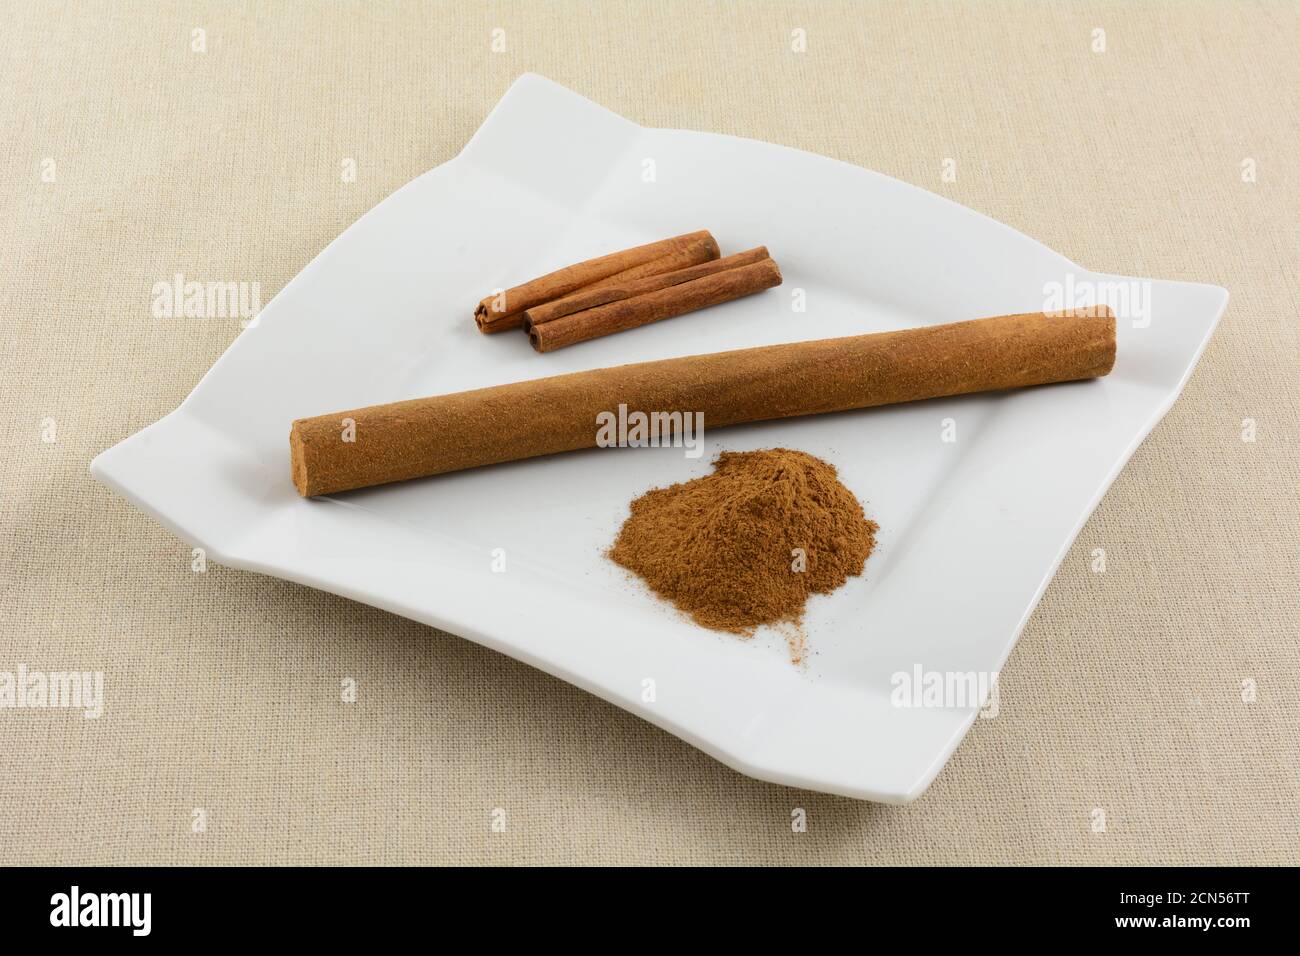 Niederländische Zimtstange Snack mit Zimtstange und Stapel Gemahlener Zimt auf weißem Snackteller auf hellbrauner Tischdecke Stockfoto